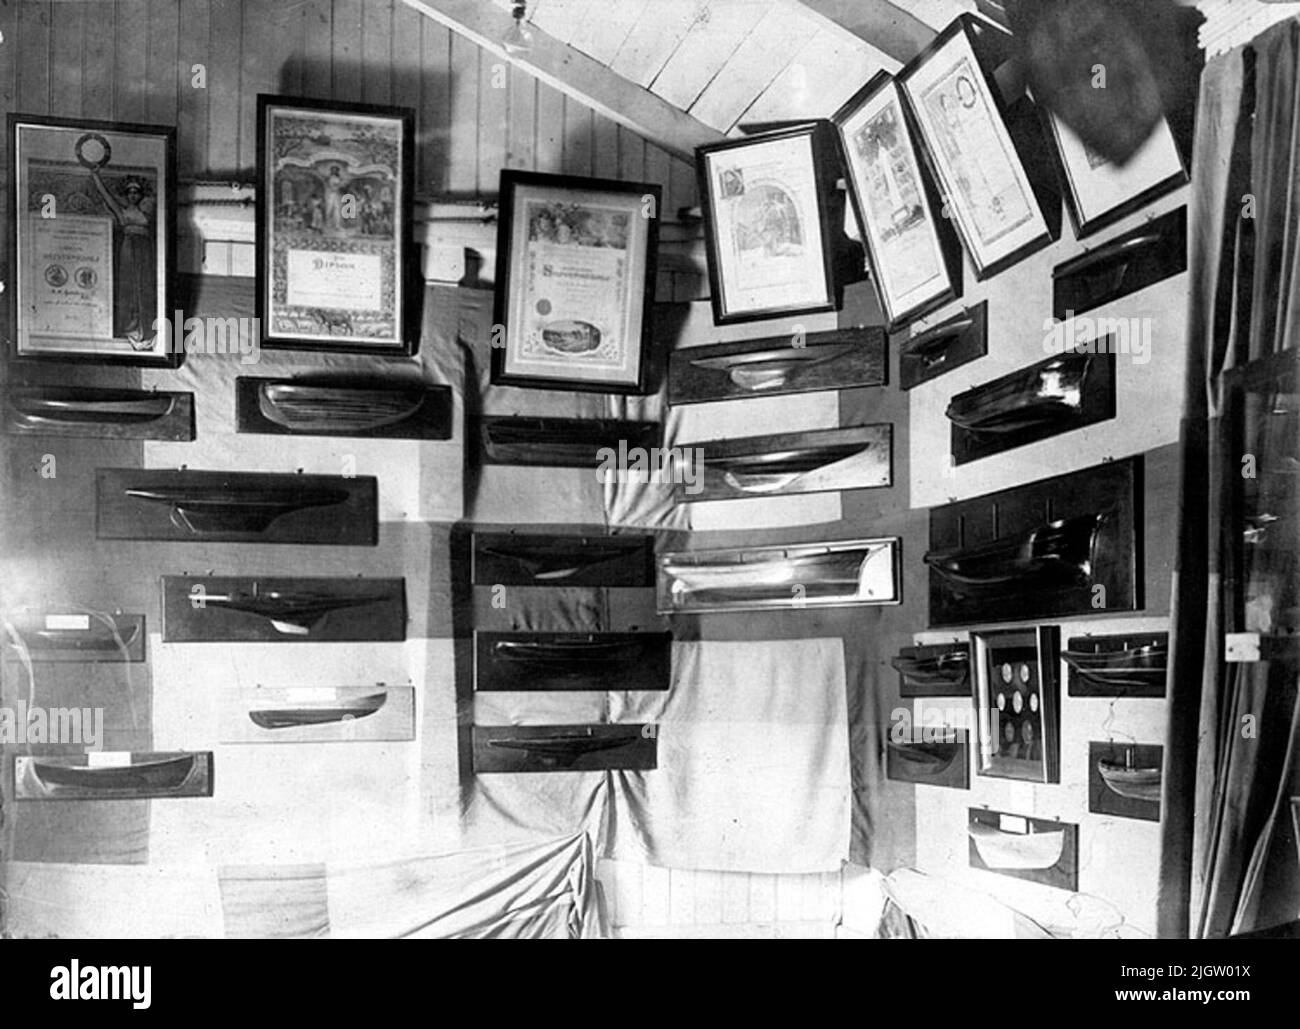 Scritto sul retro: Mostra dell'Halmstad Craft Association al Norre Cat di Halmstad 1919. Kadeller e diploma di costruttori navali Gustafsson. Foto Stock